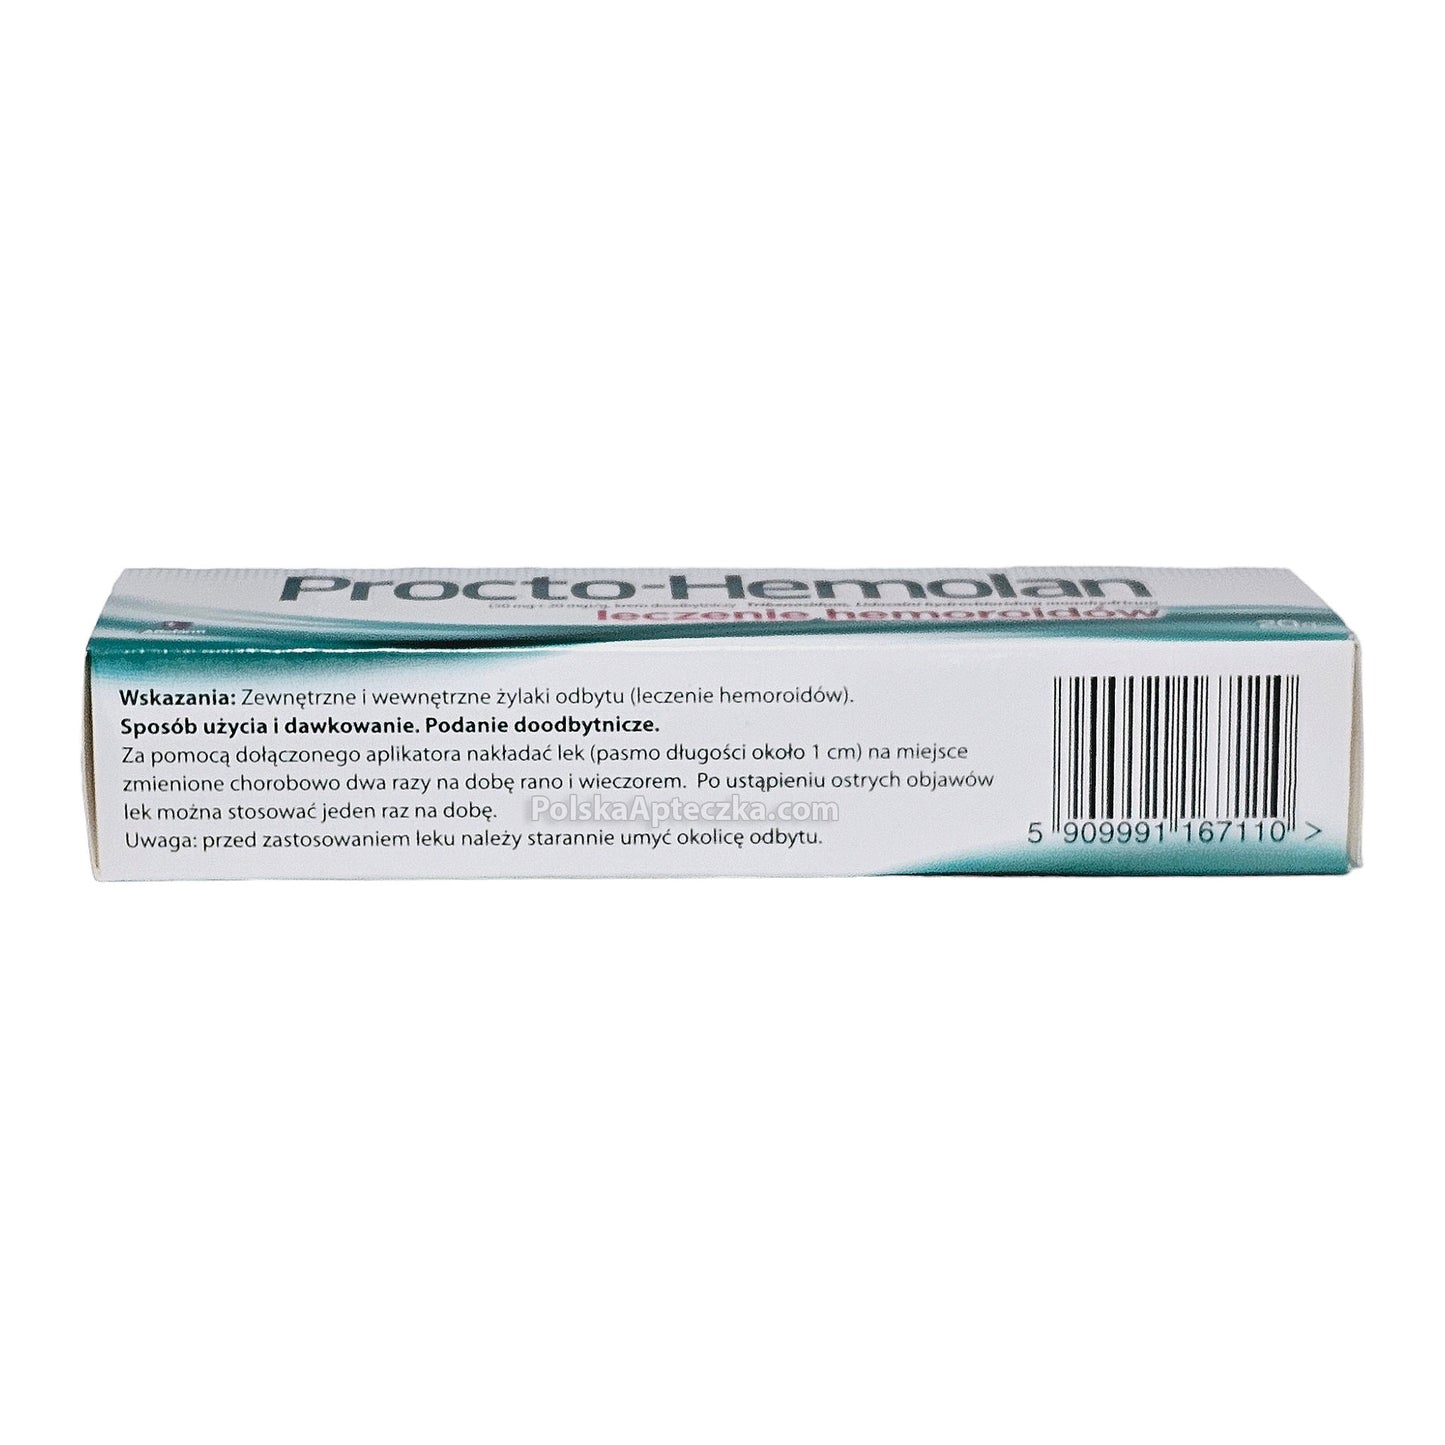 procto-hemolan cream